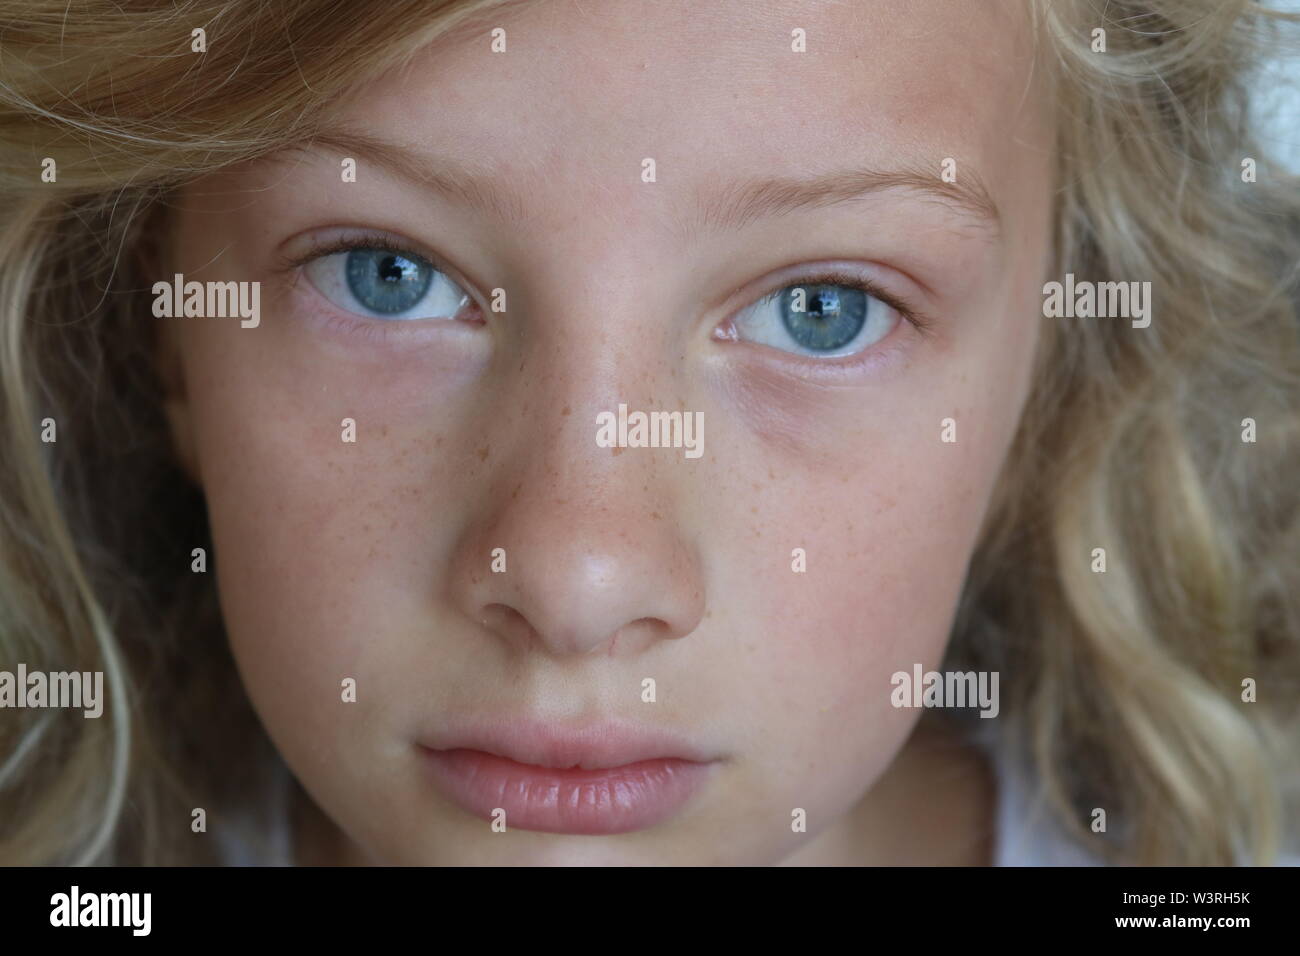 Primo piano di una bella ragazza preteen con gli occhi blu e un triste, lo sguardo serio Foto Stock